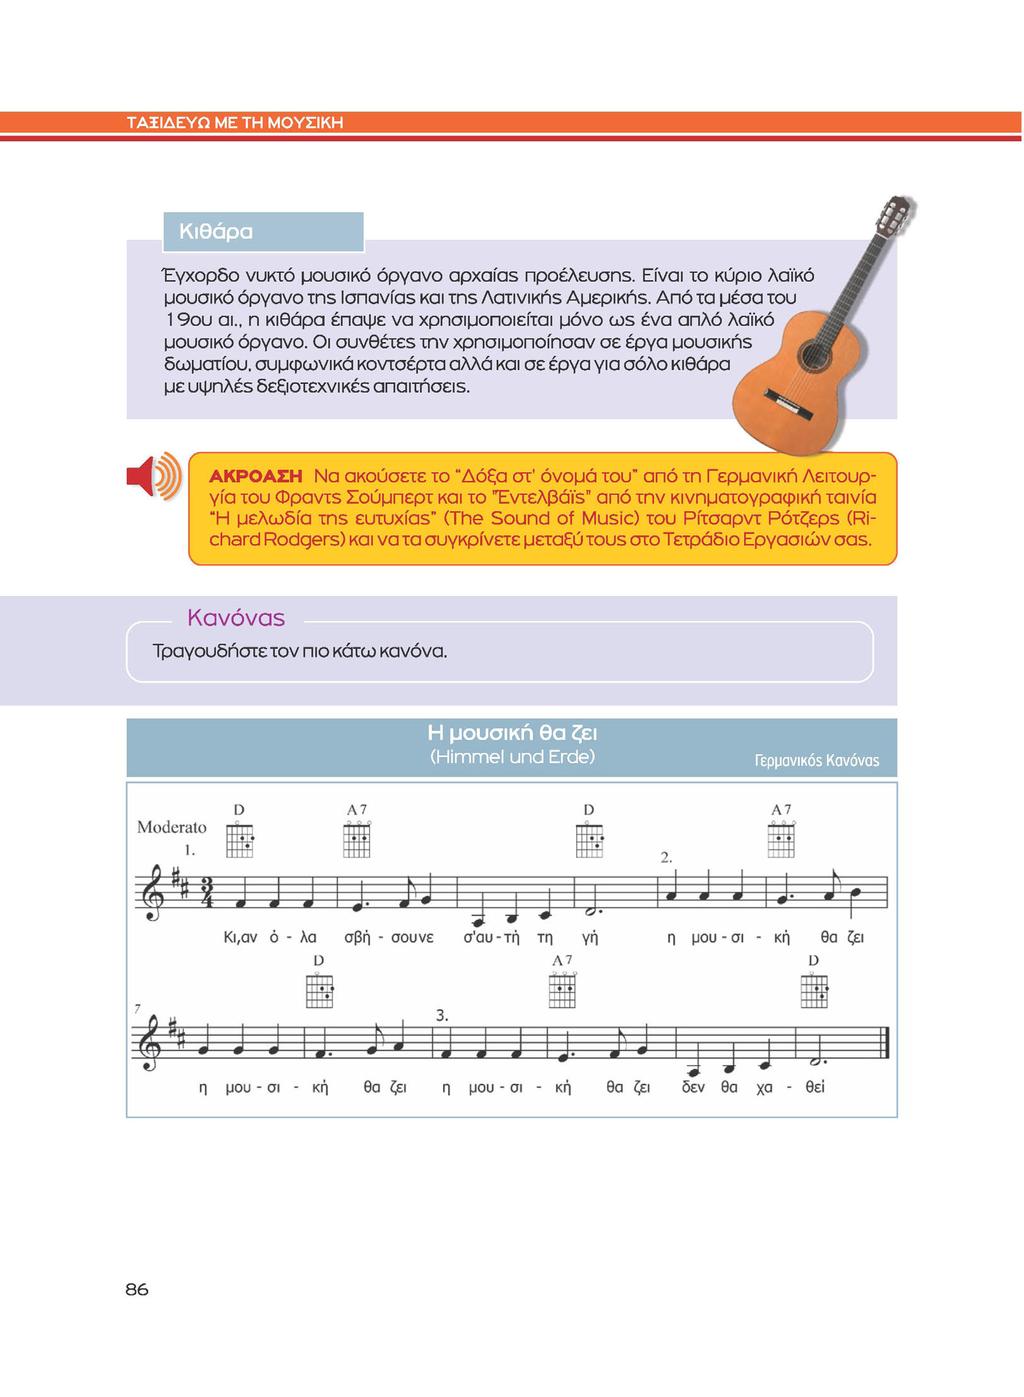 Κιθάρα Έγχορδο νυκτό μουσικό όργανο αρχαίας προέλευσης. Είναι το κύριο λαϊκό μουσικό όργανο της lσπανίας και της Λατινικής Αμερικής. Από τα μέσα του 19ου αι.